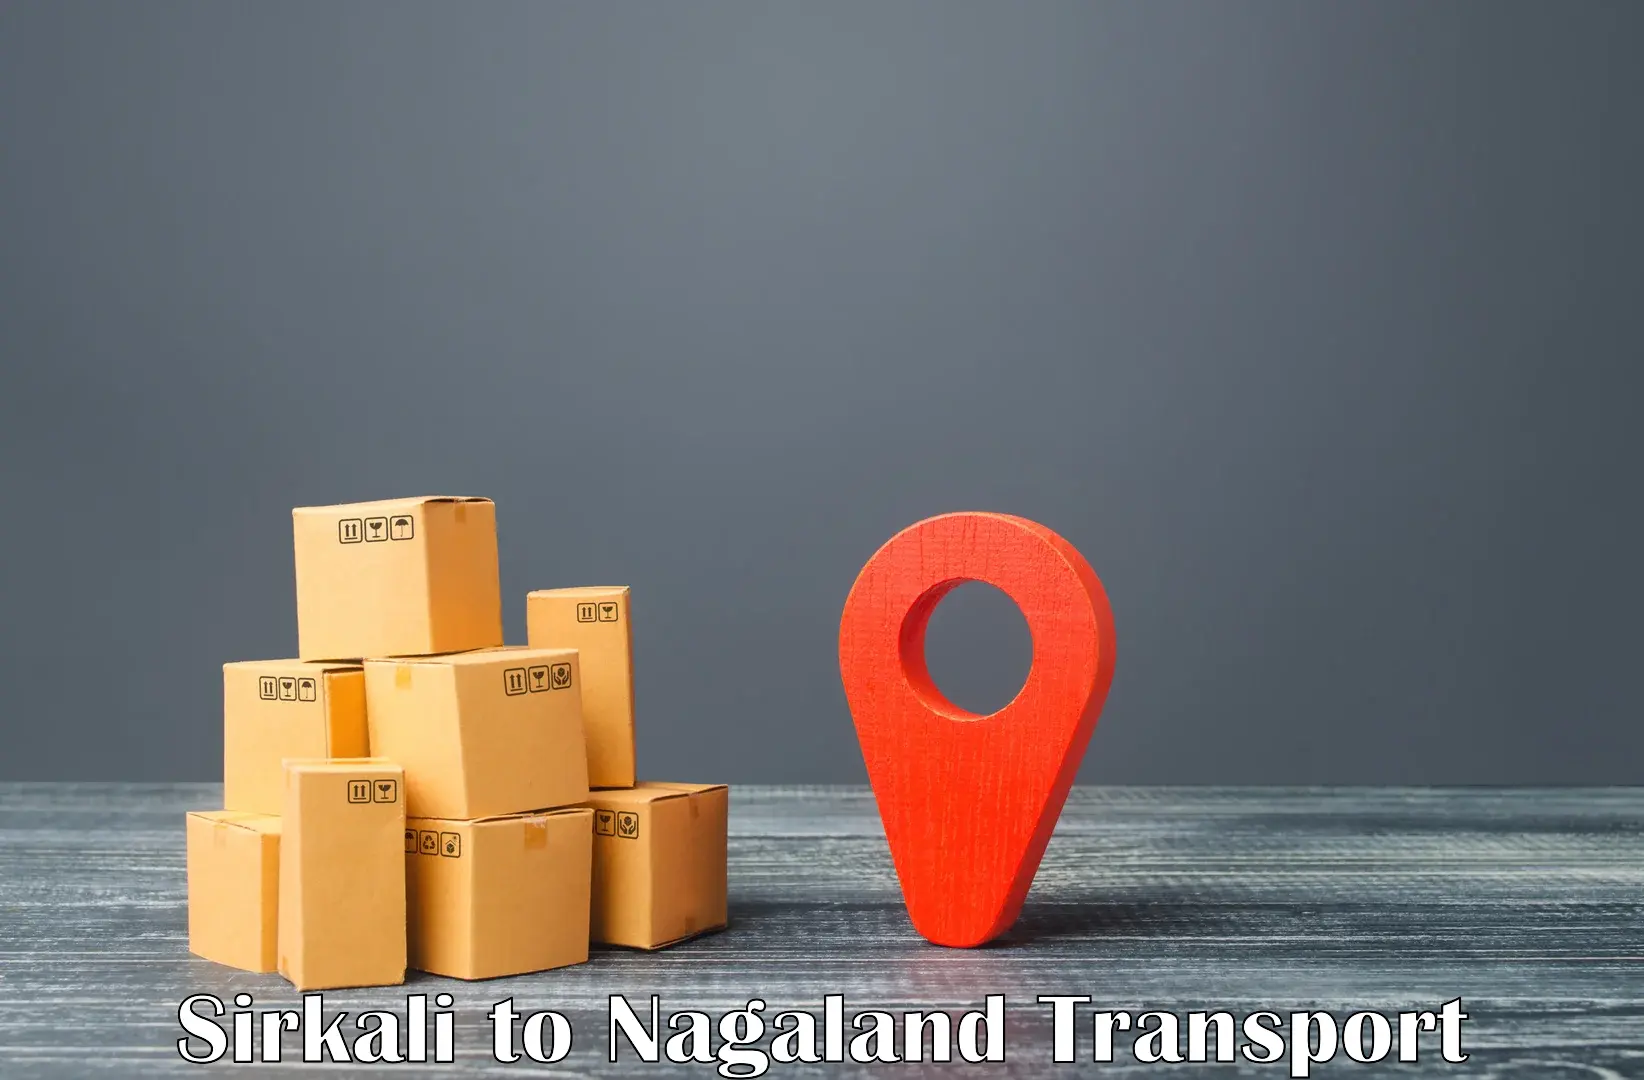 Interstate transport services Sirkali to Nagaland